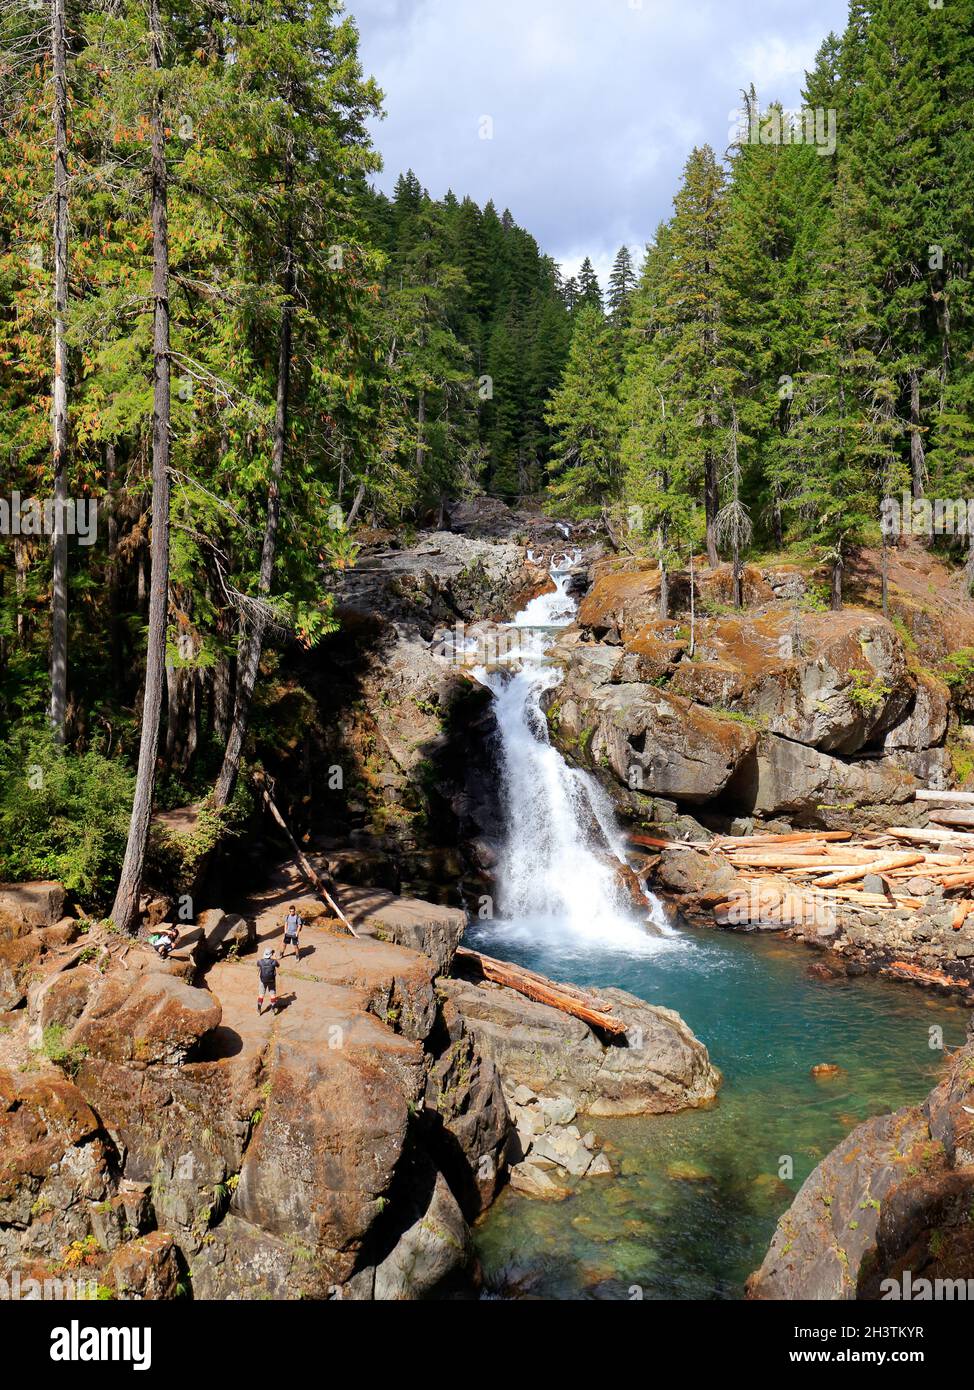 Silver Falls im Mount Rainier National Park, Washington. Ein Wasserfall am Ohanapecosh River, der bei Wanderern in der Nähe des Ohanapecosh Campground beliebt ist Stockfoto